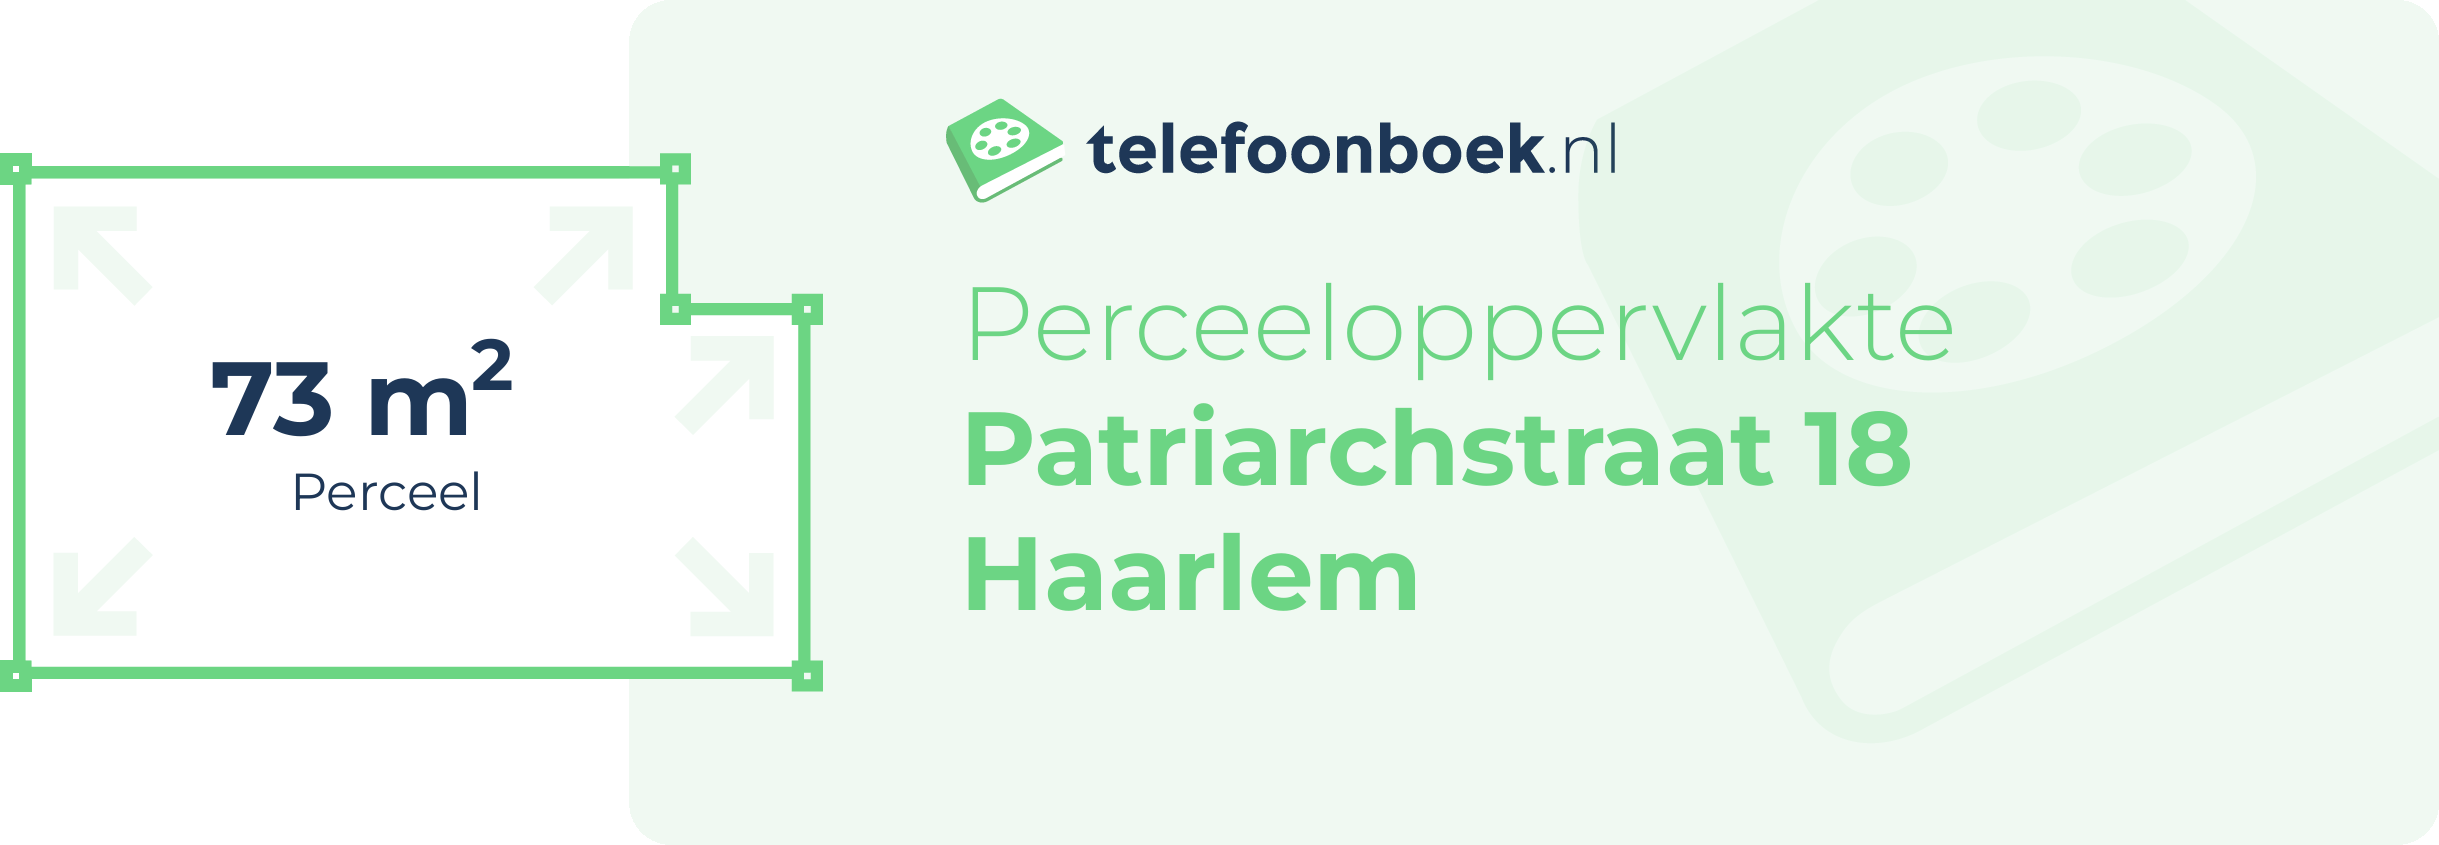 Perceeloppervlakte Patriarchstraat 18 Haarlem